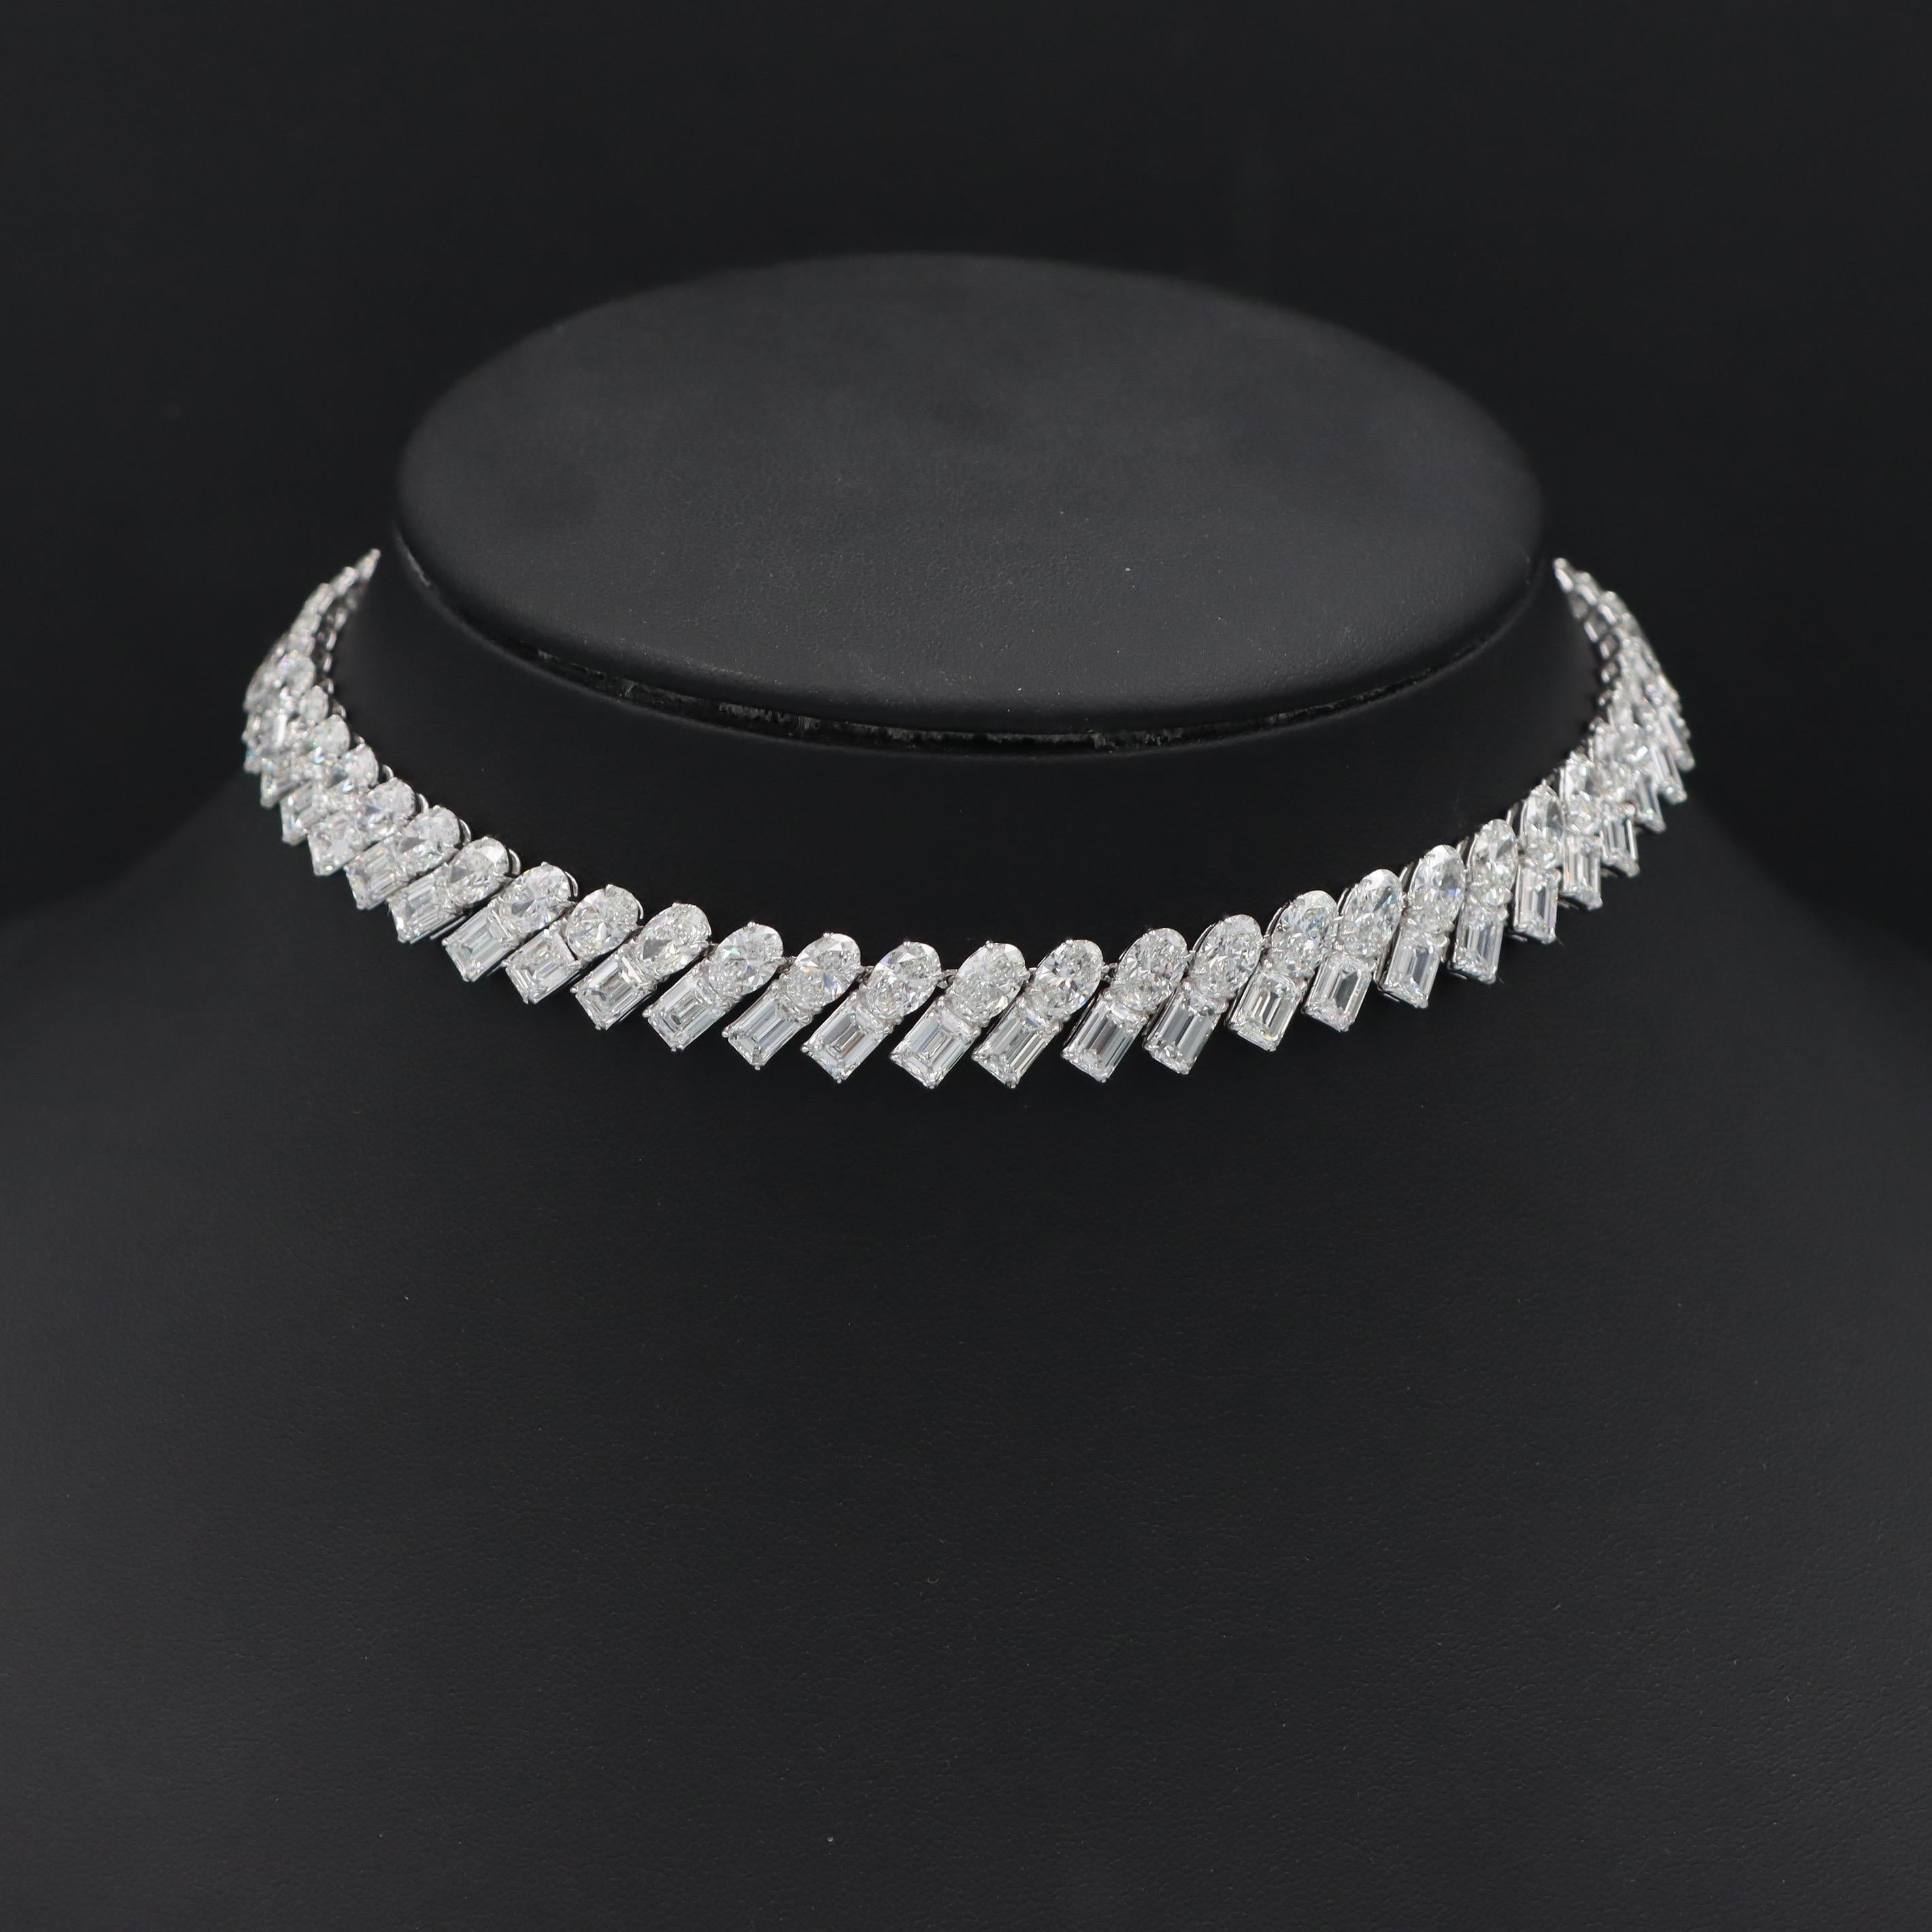 Emerald Cut Emilio Jewelry Gia Certified 67 Carat Diamond Choker Necklace For Sale